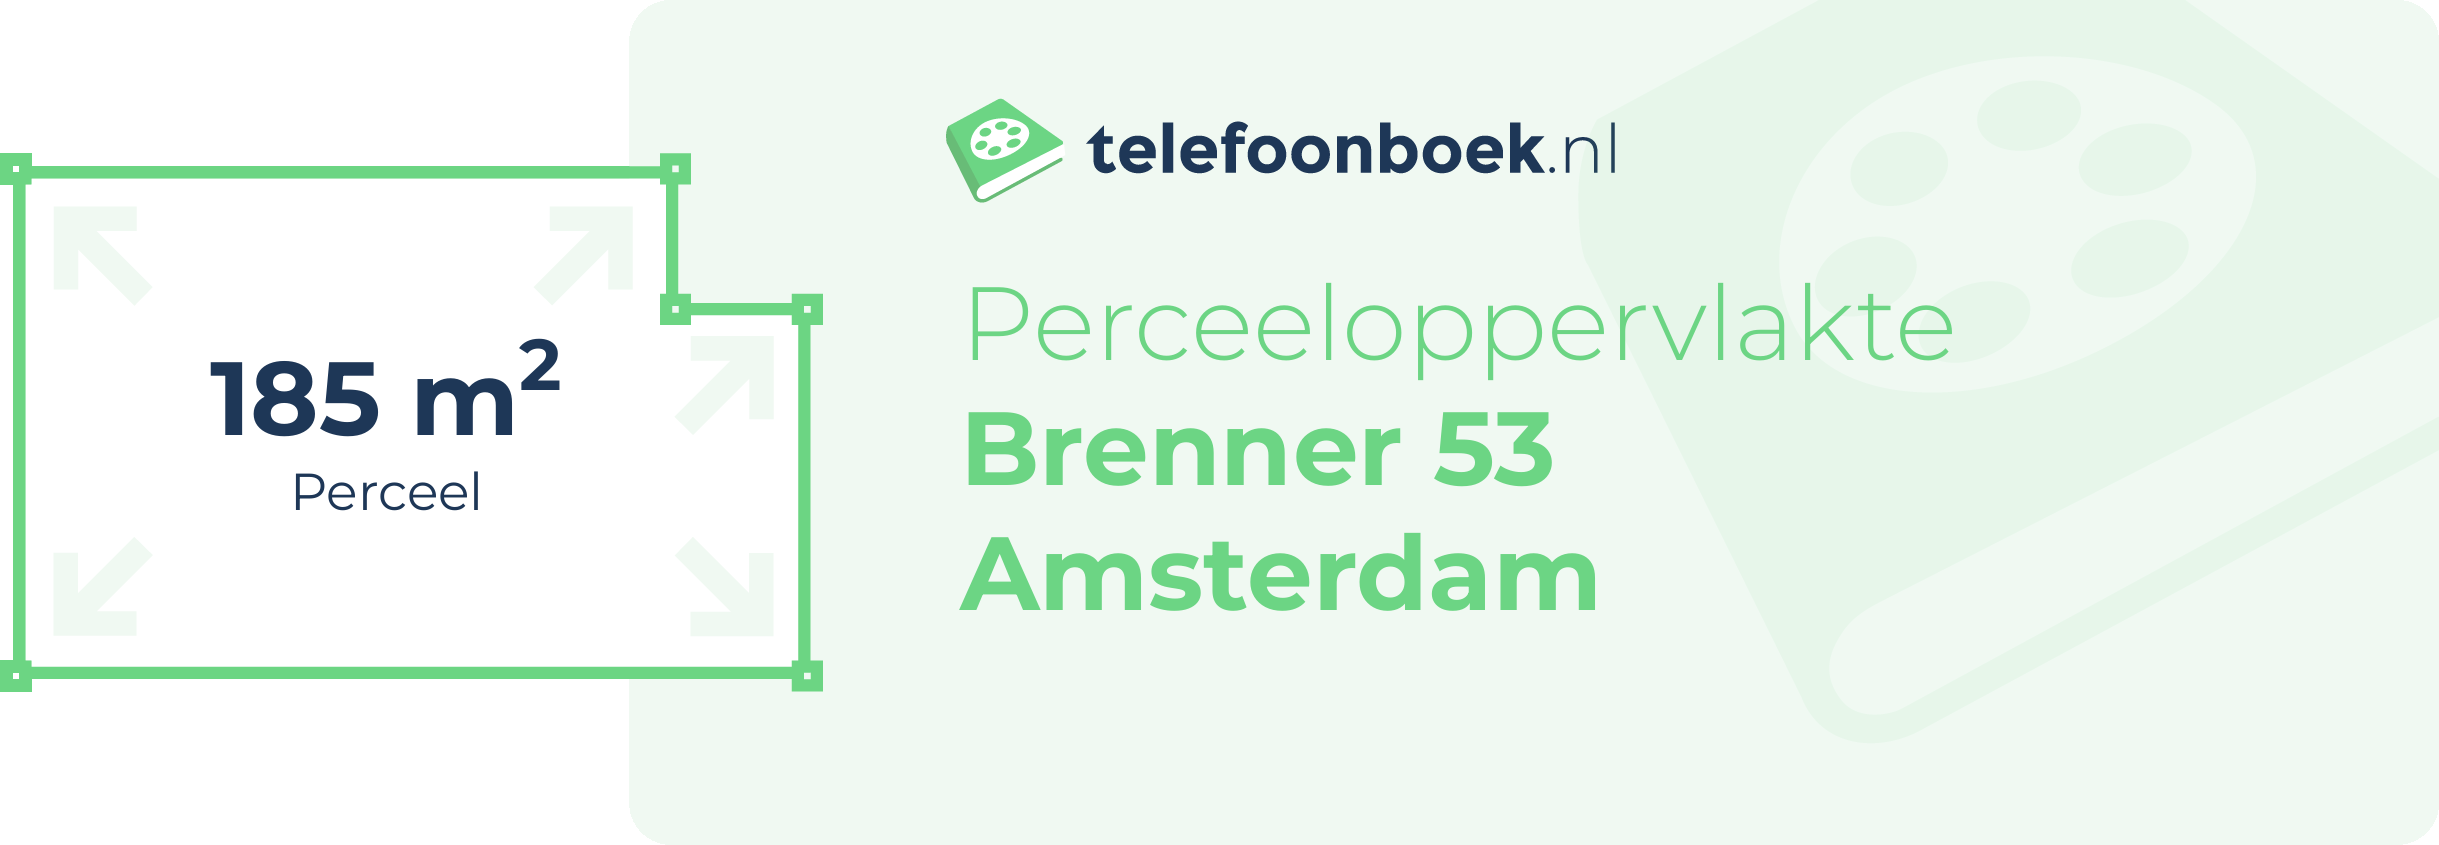 Perceeloppervlakte Brenner 53 Amsterdam